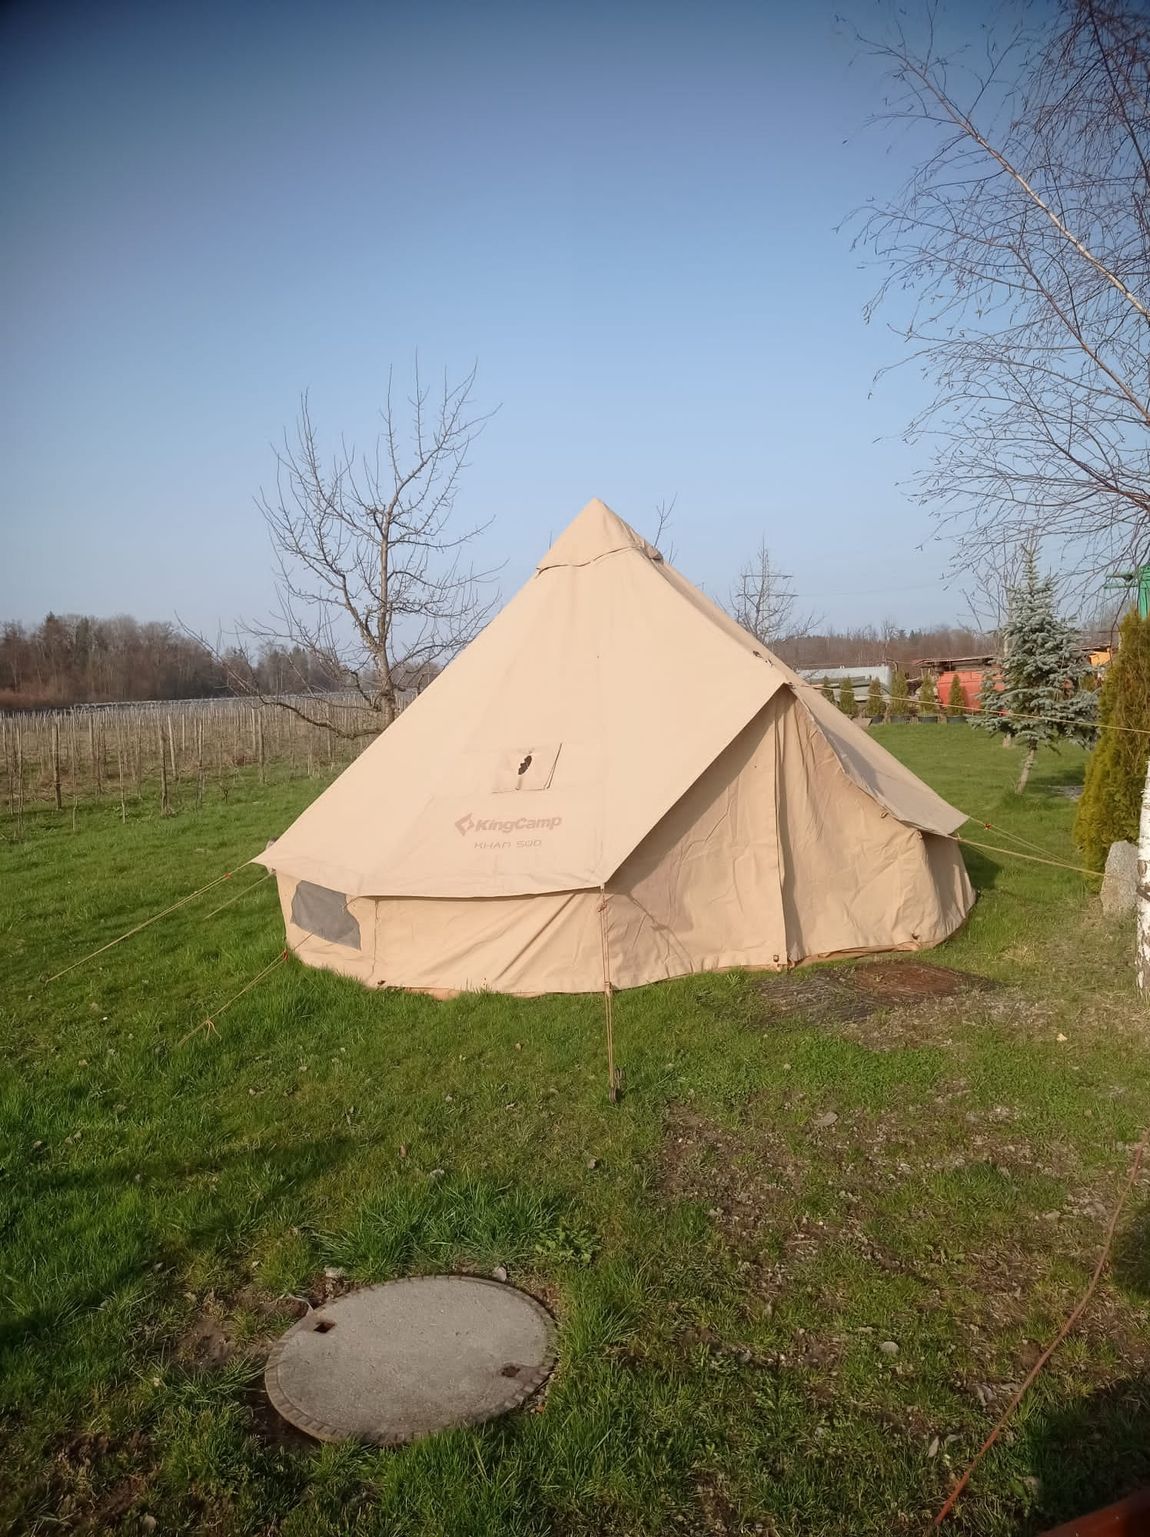 Romantik-Zelt am Obstgarten nahe des Bodensees